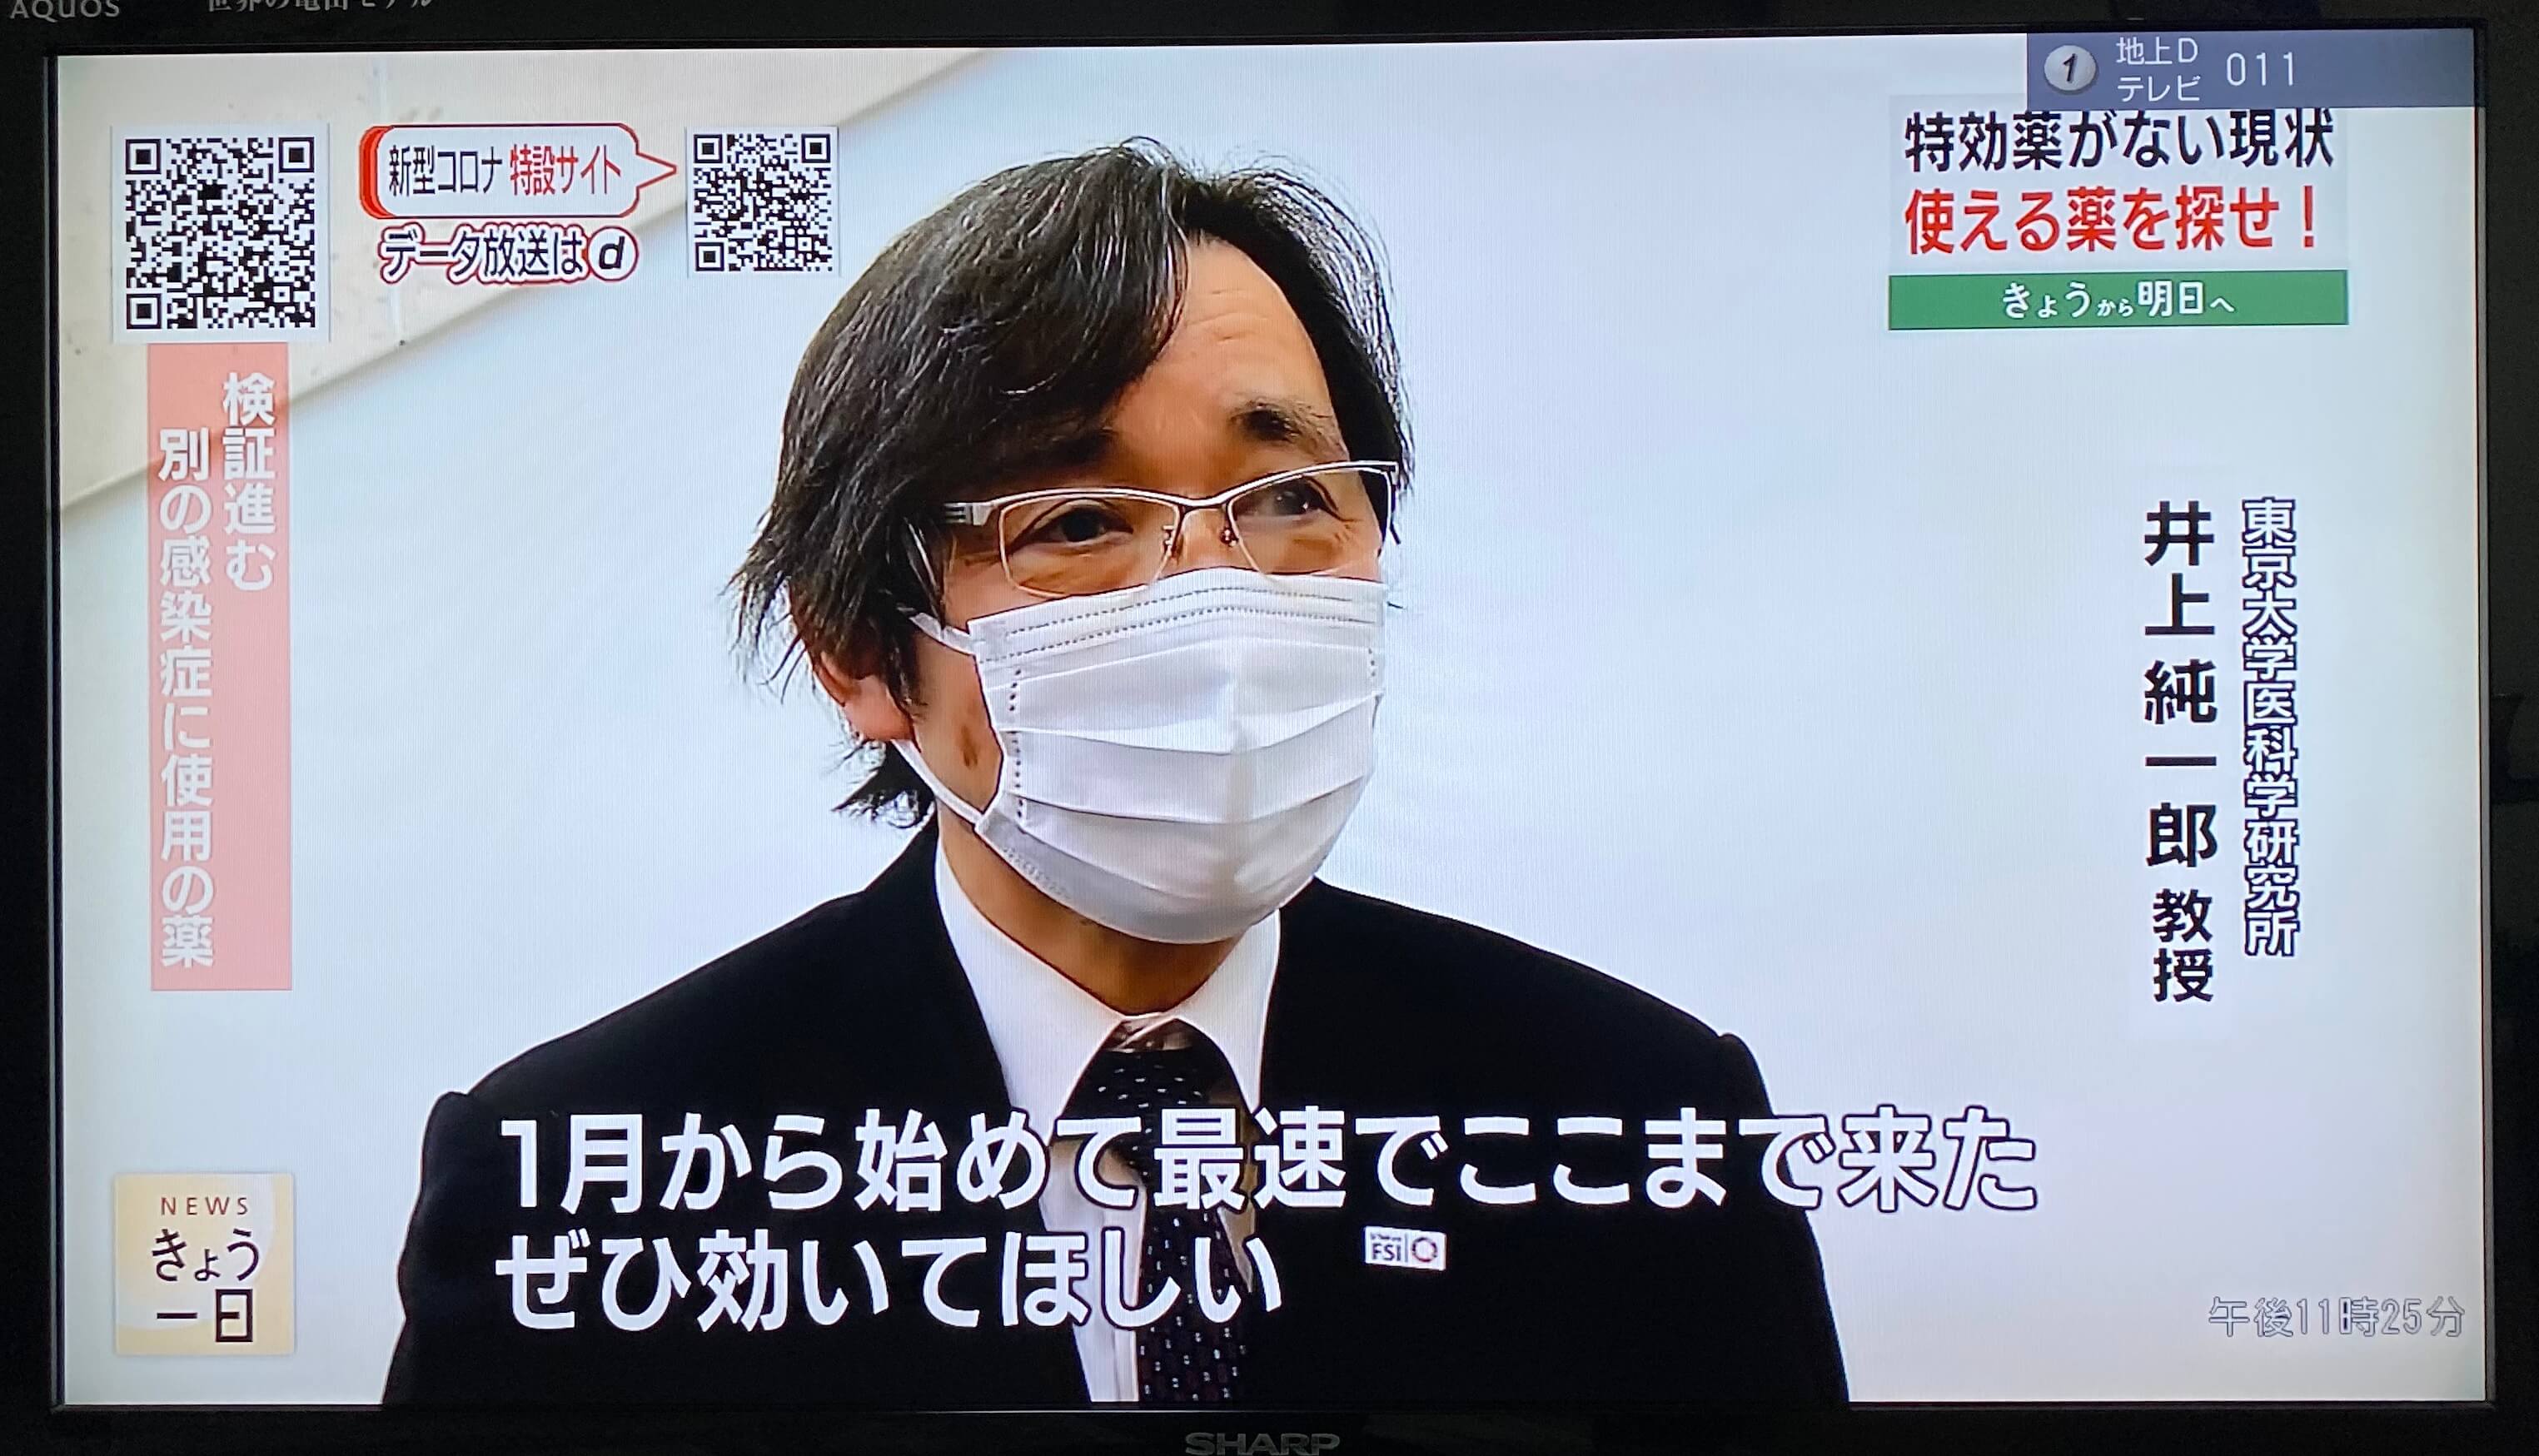 【新型肺炎】东京大学发现胰腺炎药物“萘莫司他”有可能阻止新型冠状病毒感染人体